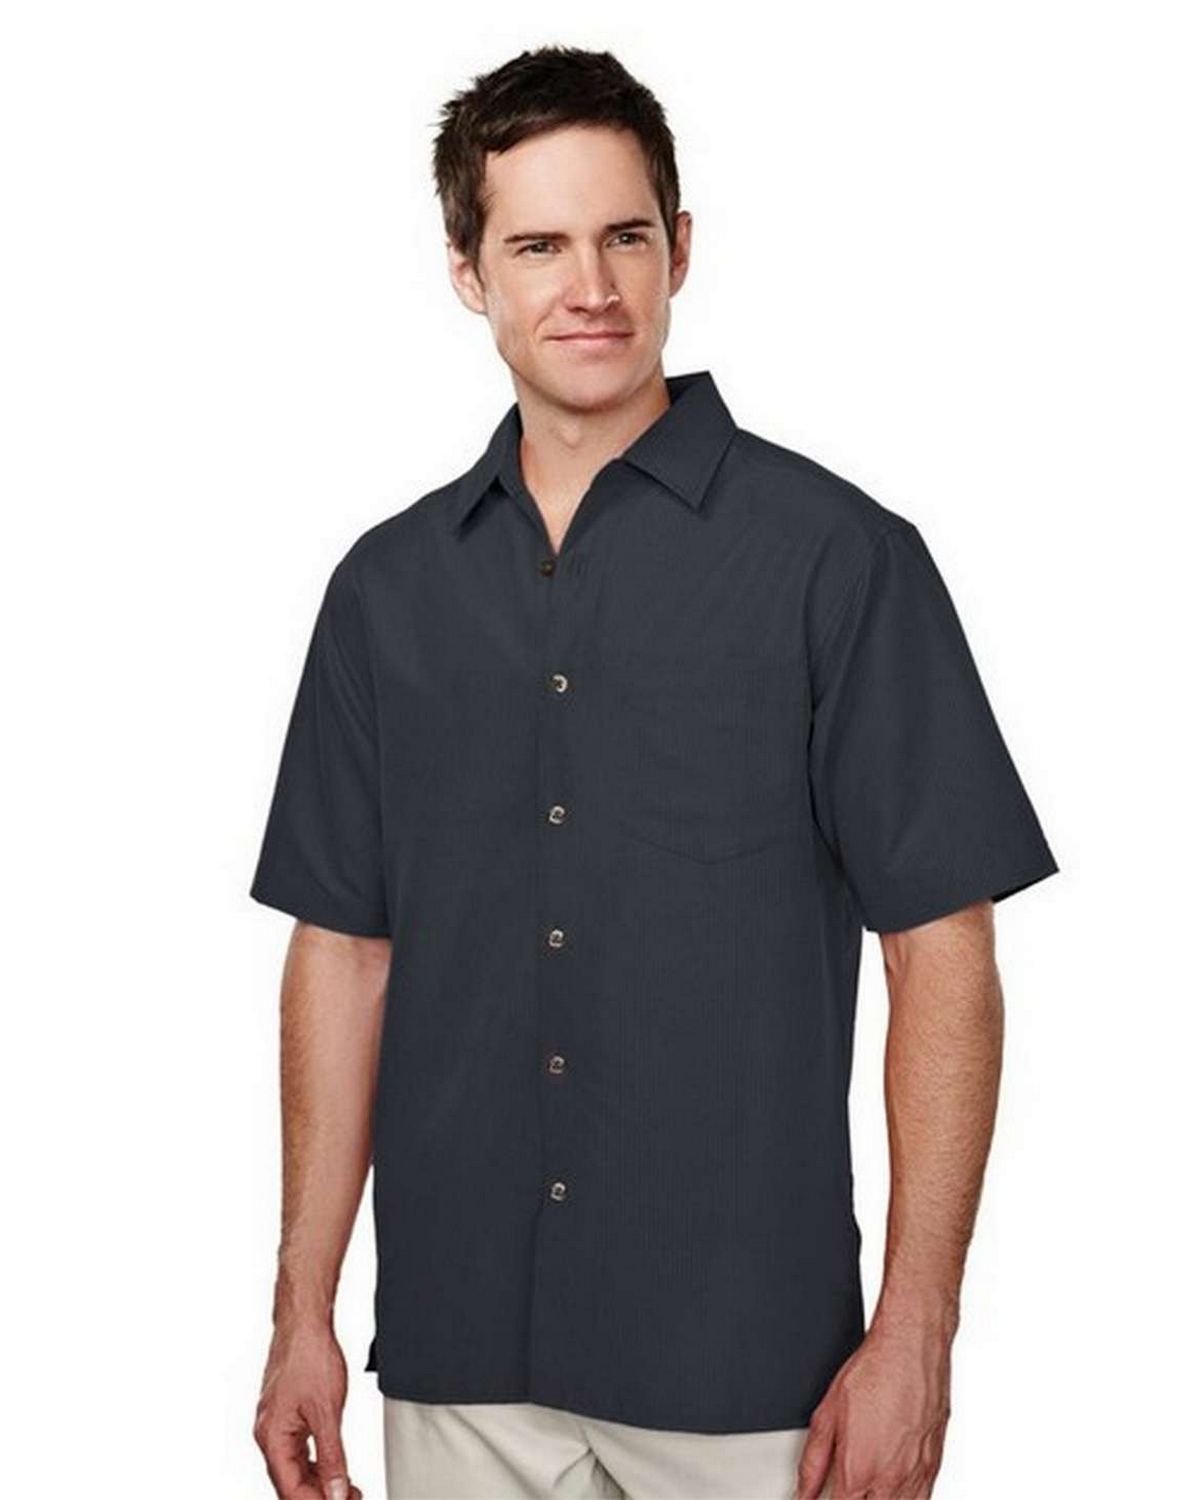 Buy Tri-Mountain 723 Bechard Woven Shirt